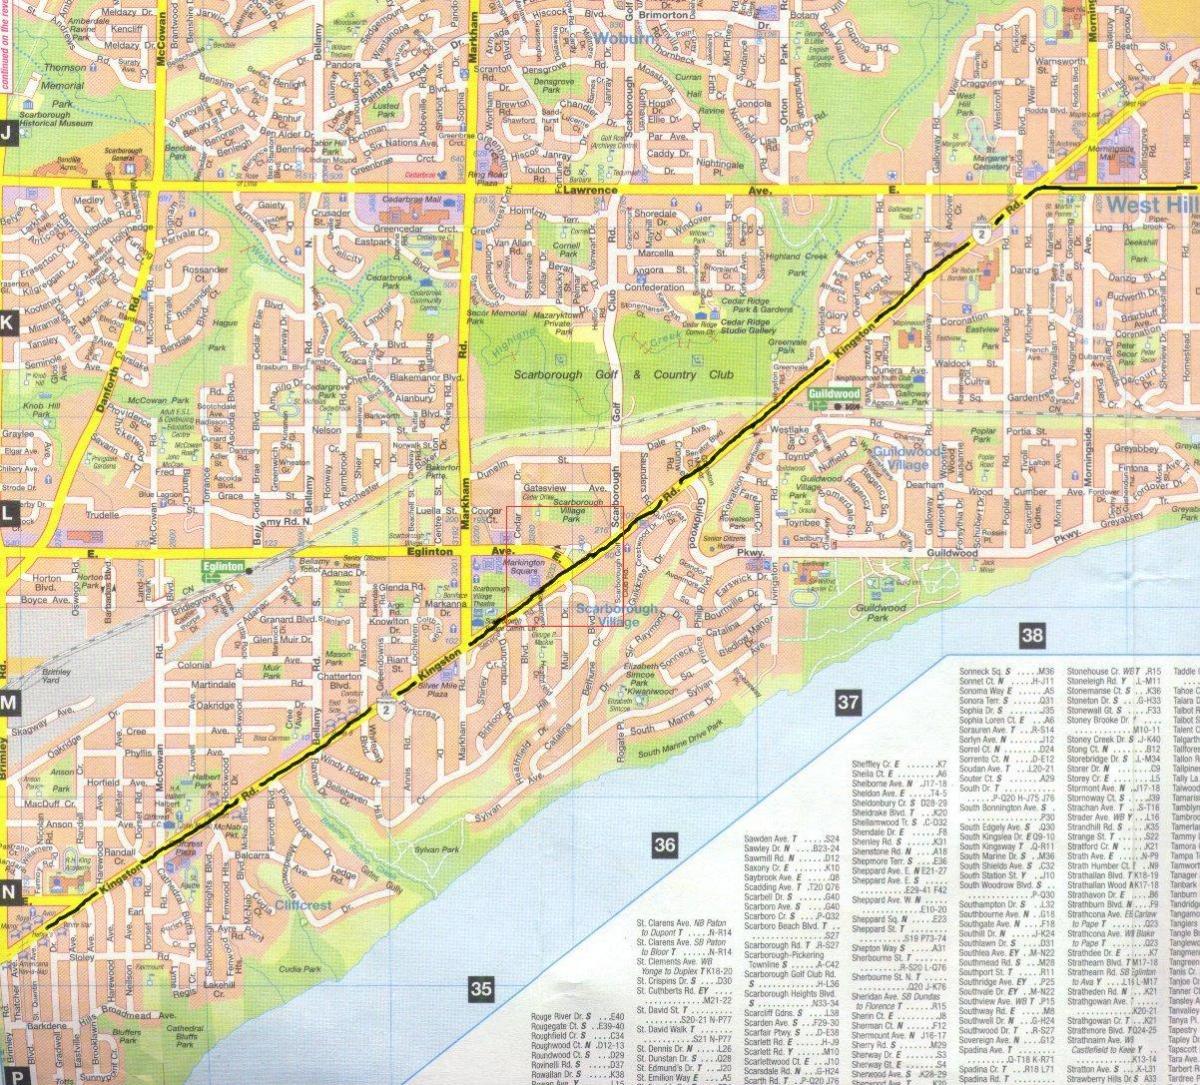 Mapa de Kingston carretera de Toronto